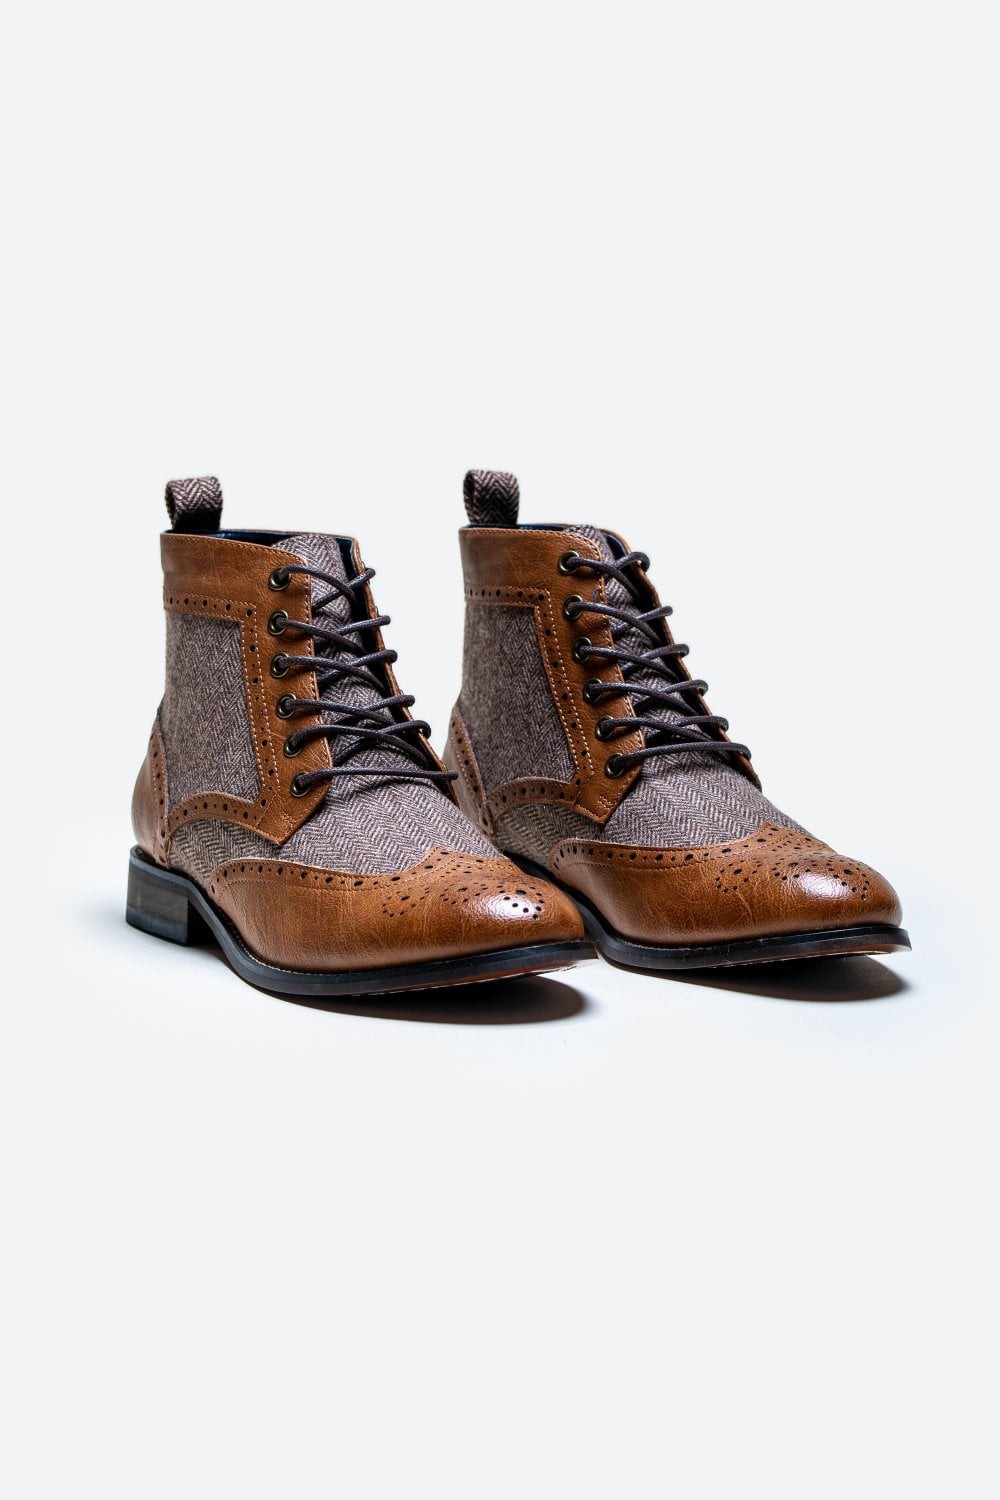 Men's Ankle Boots Lace Up Brogue Shoes - JONES - Tan